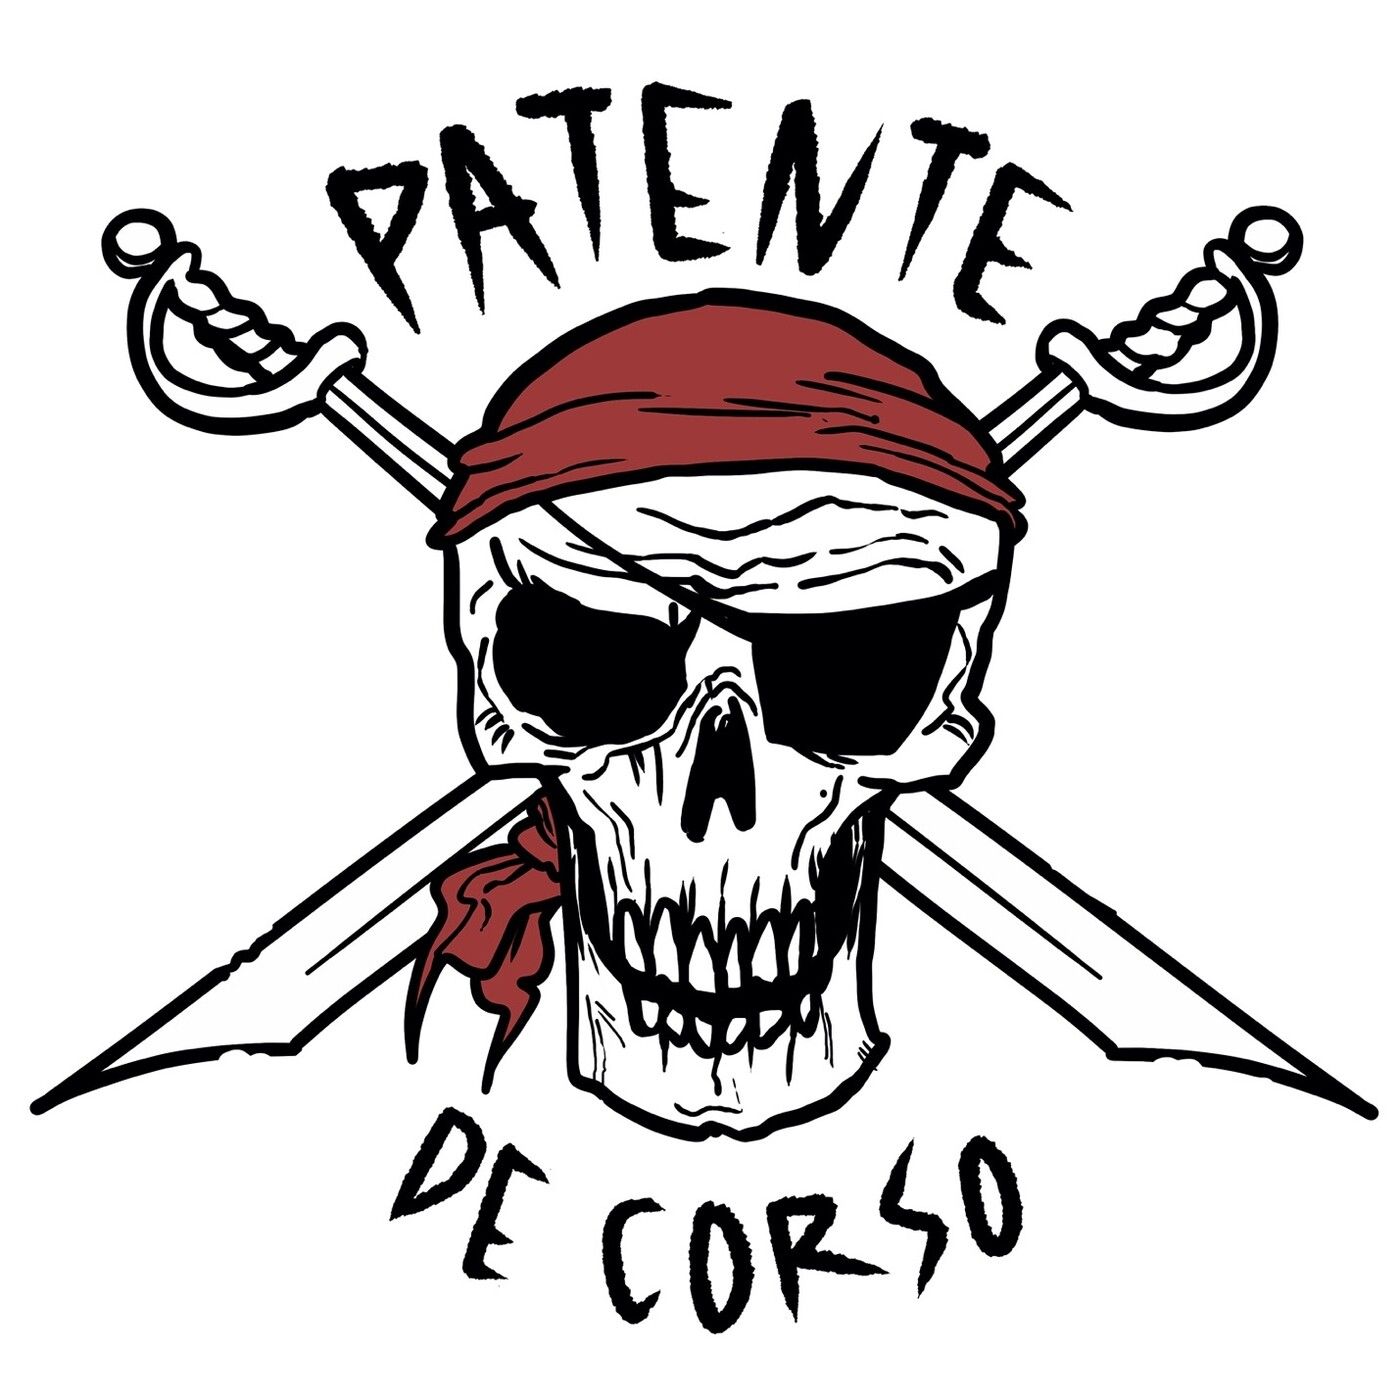 Patente de Corso